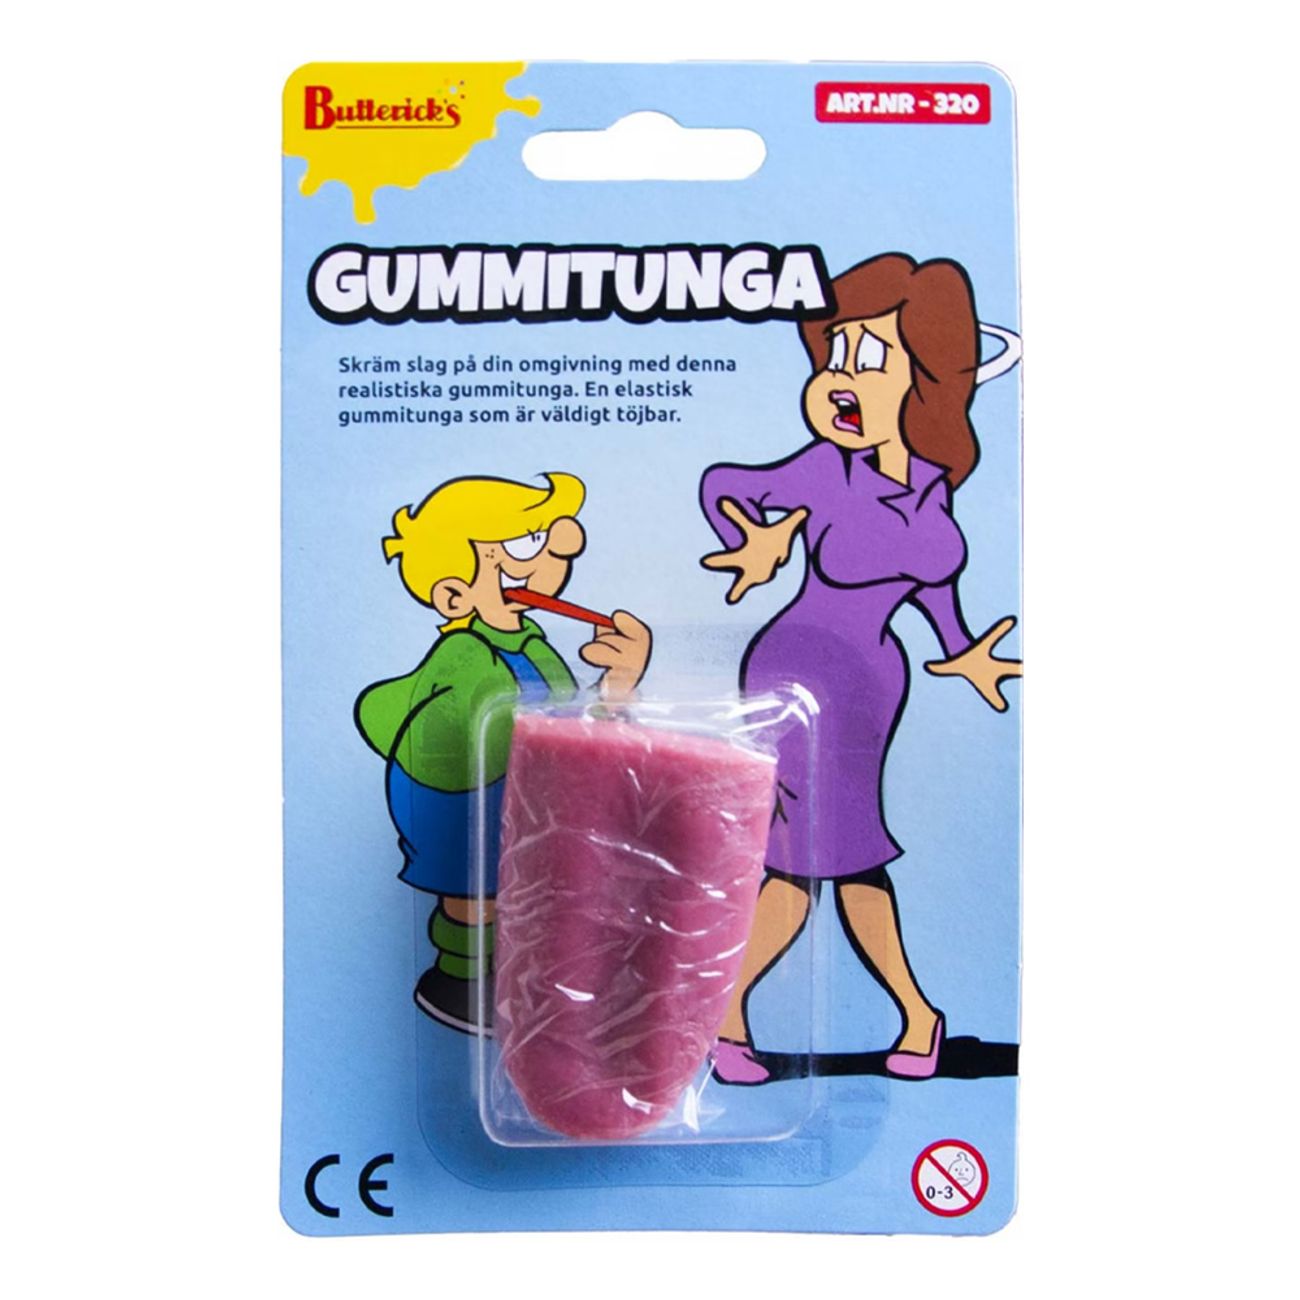 gummitunga-elastisk-skamtartikel-99795-2